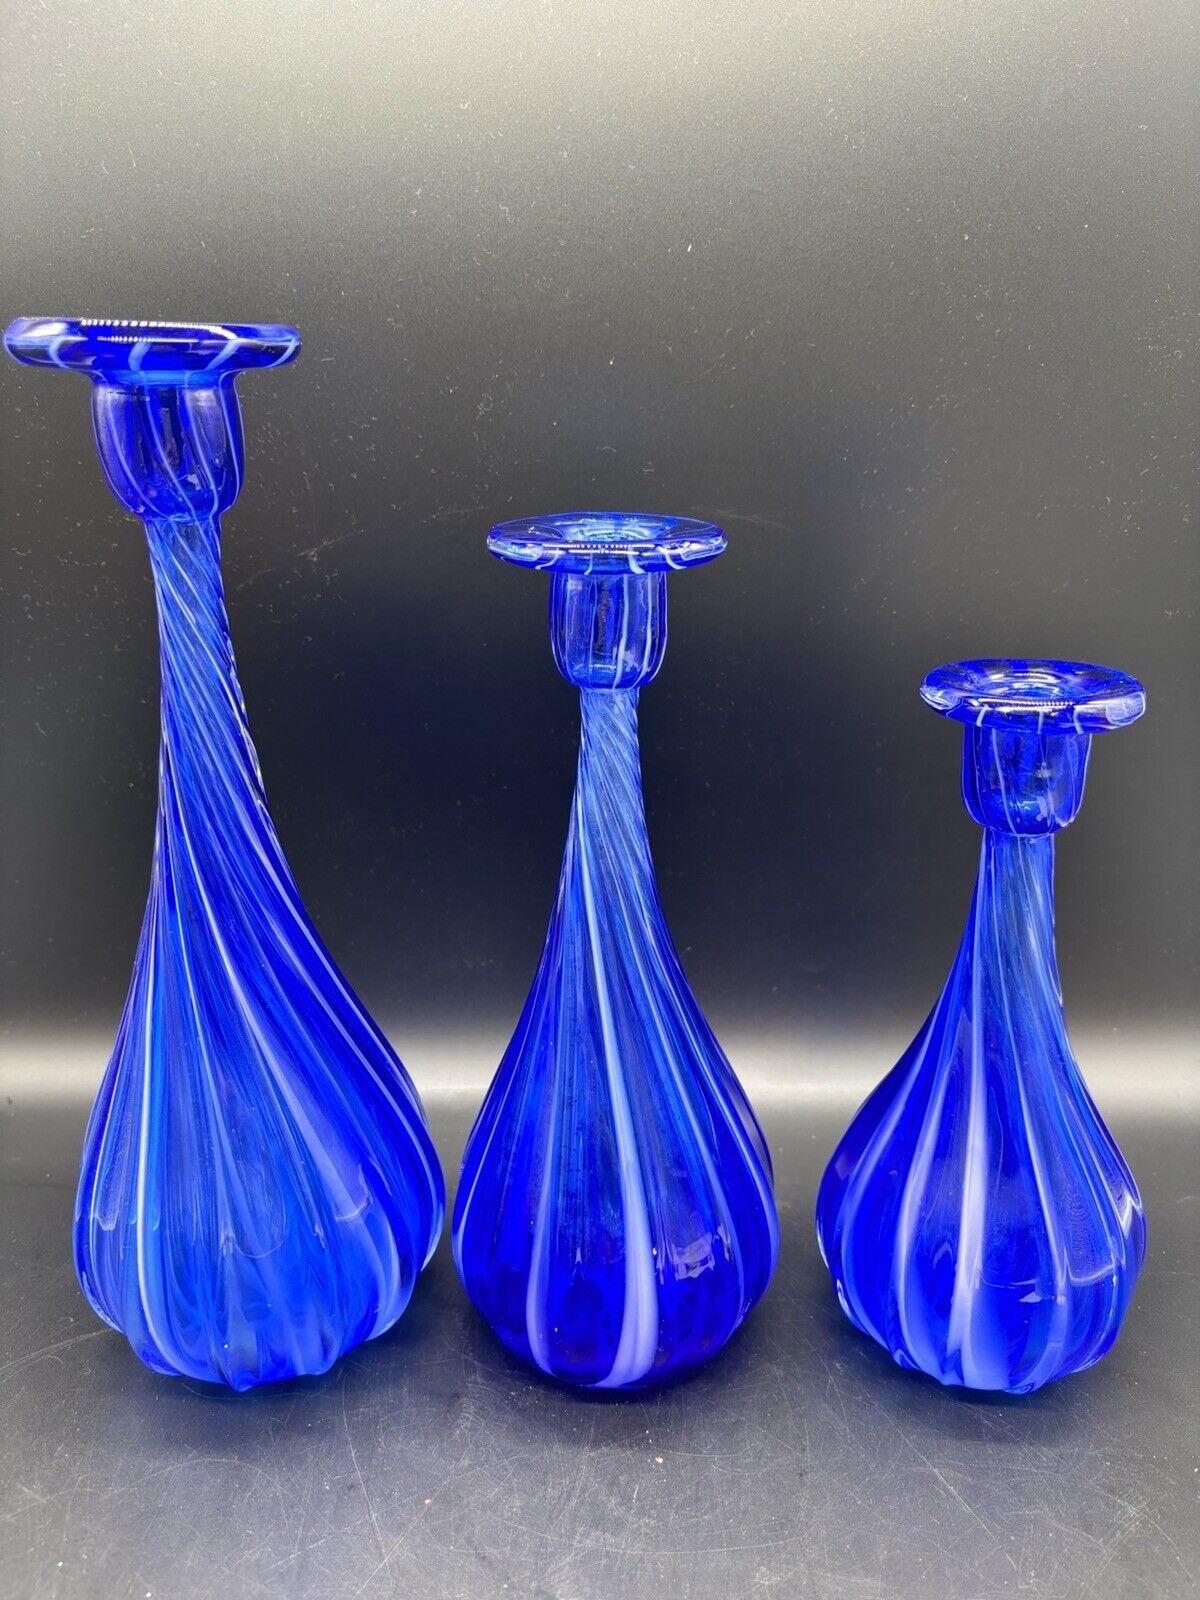 Vtg Cobalt Blue Bottles Vases Candleholders Handblown Glass Twisted